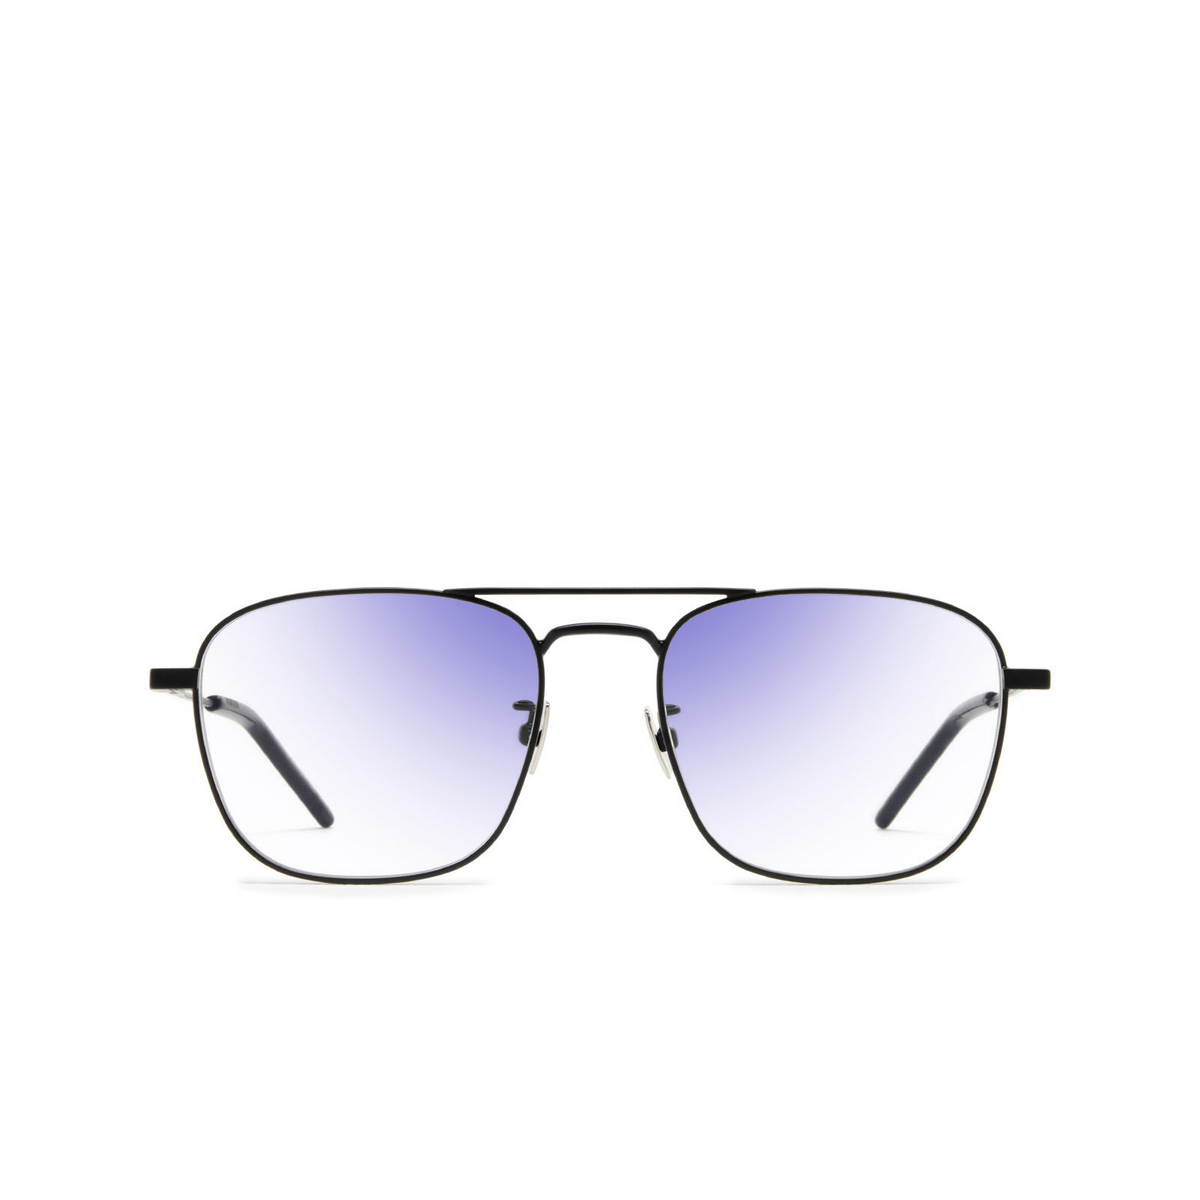 Saint Laurent® Square Sunglasses: SL 309 SUN color Black 001 - front view.